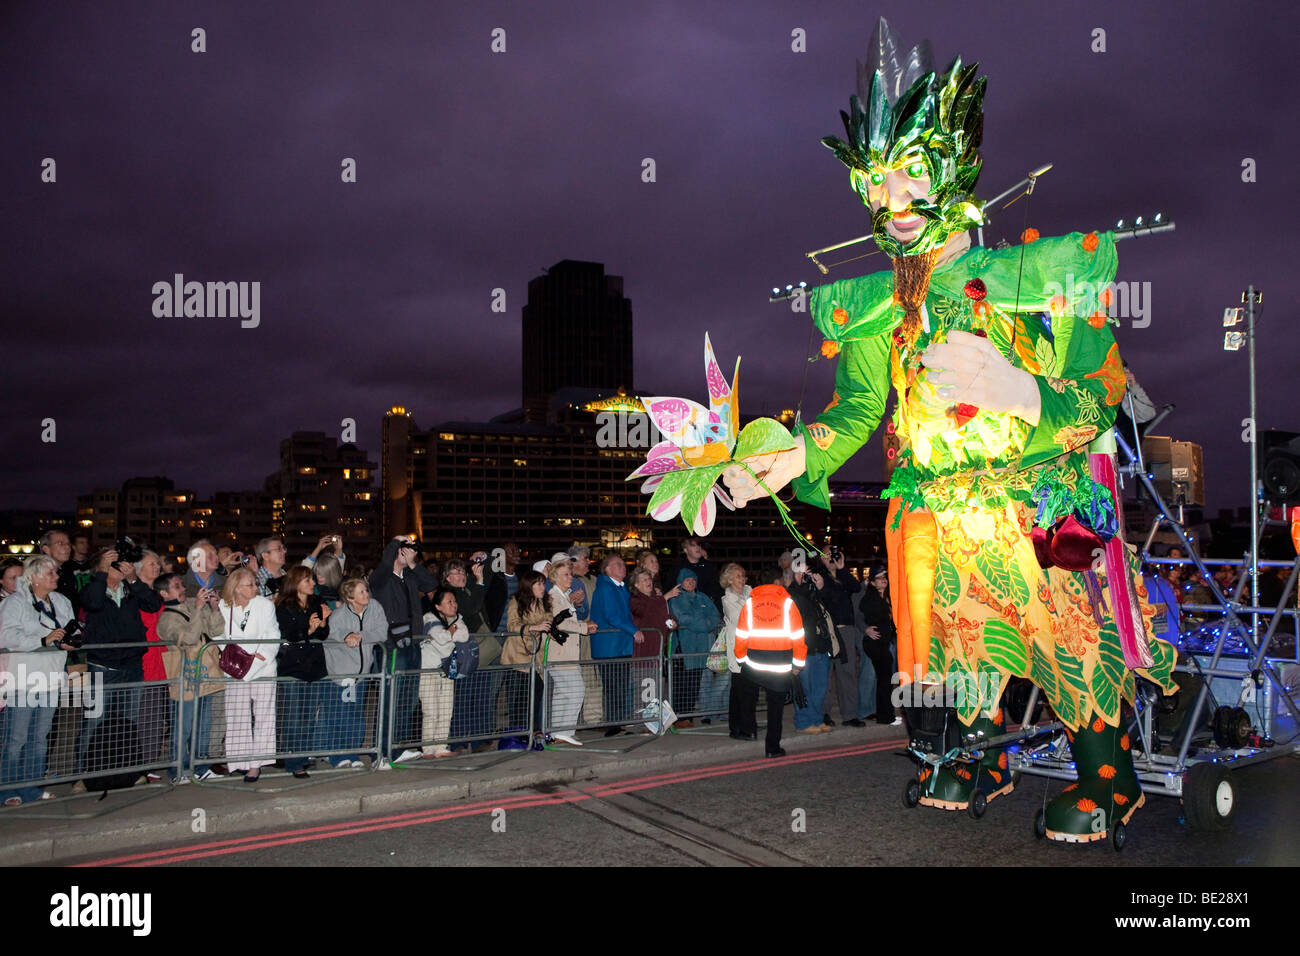 Esecutori al Tamigi Festival notte sfilata di Carnevale nel centro di Londra, Regno Unito Foto Stock